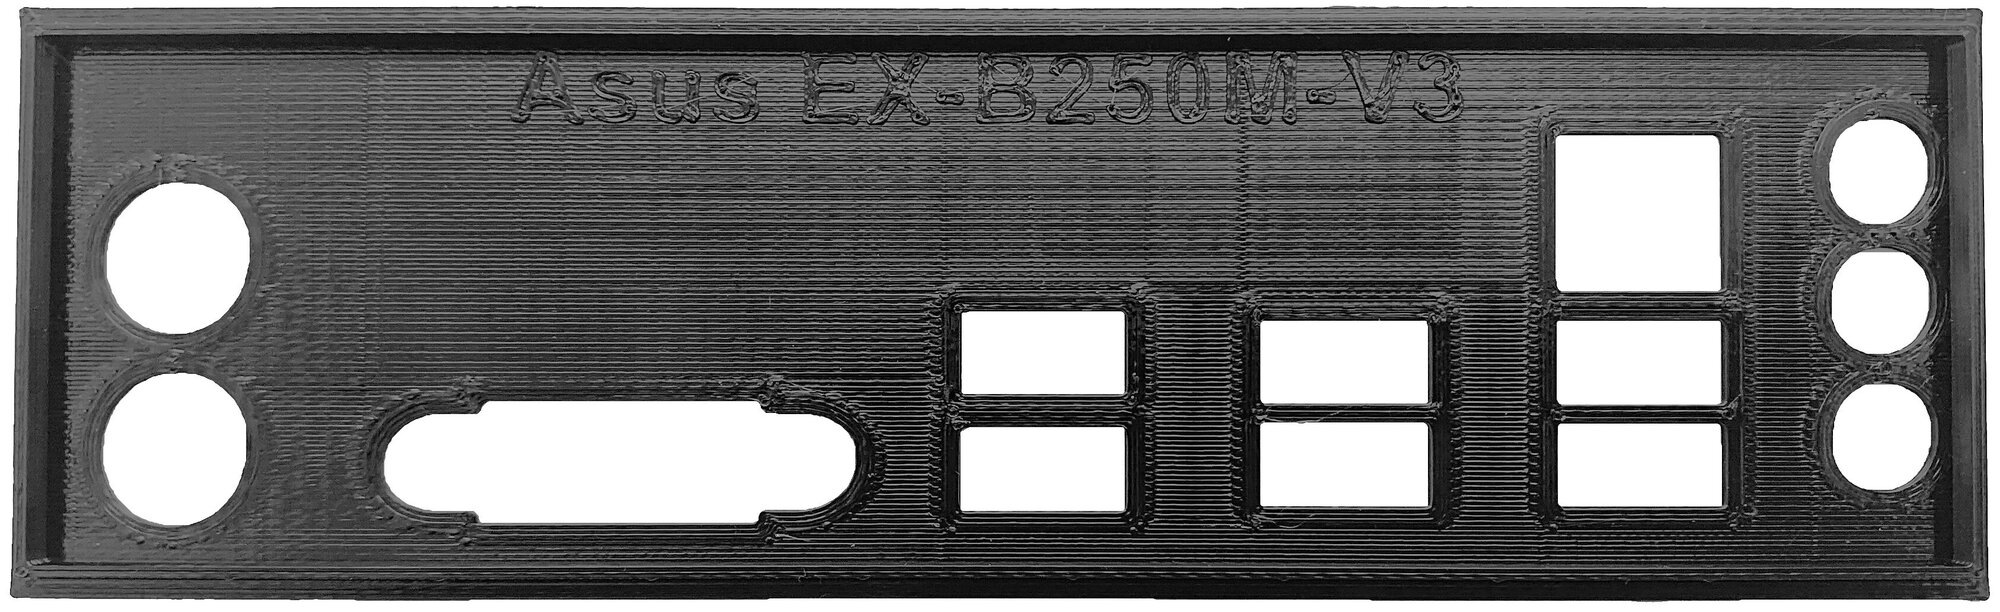 Заглушка для компьютерного корпуса к материнской плате Asus EX-B250M-V3